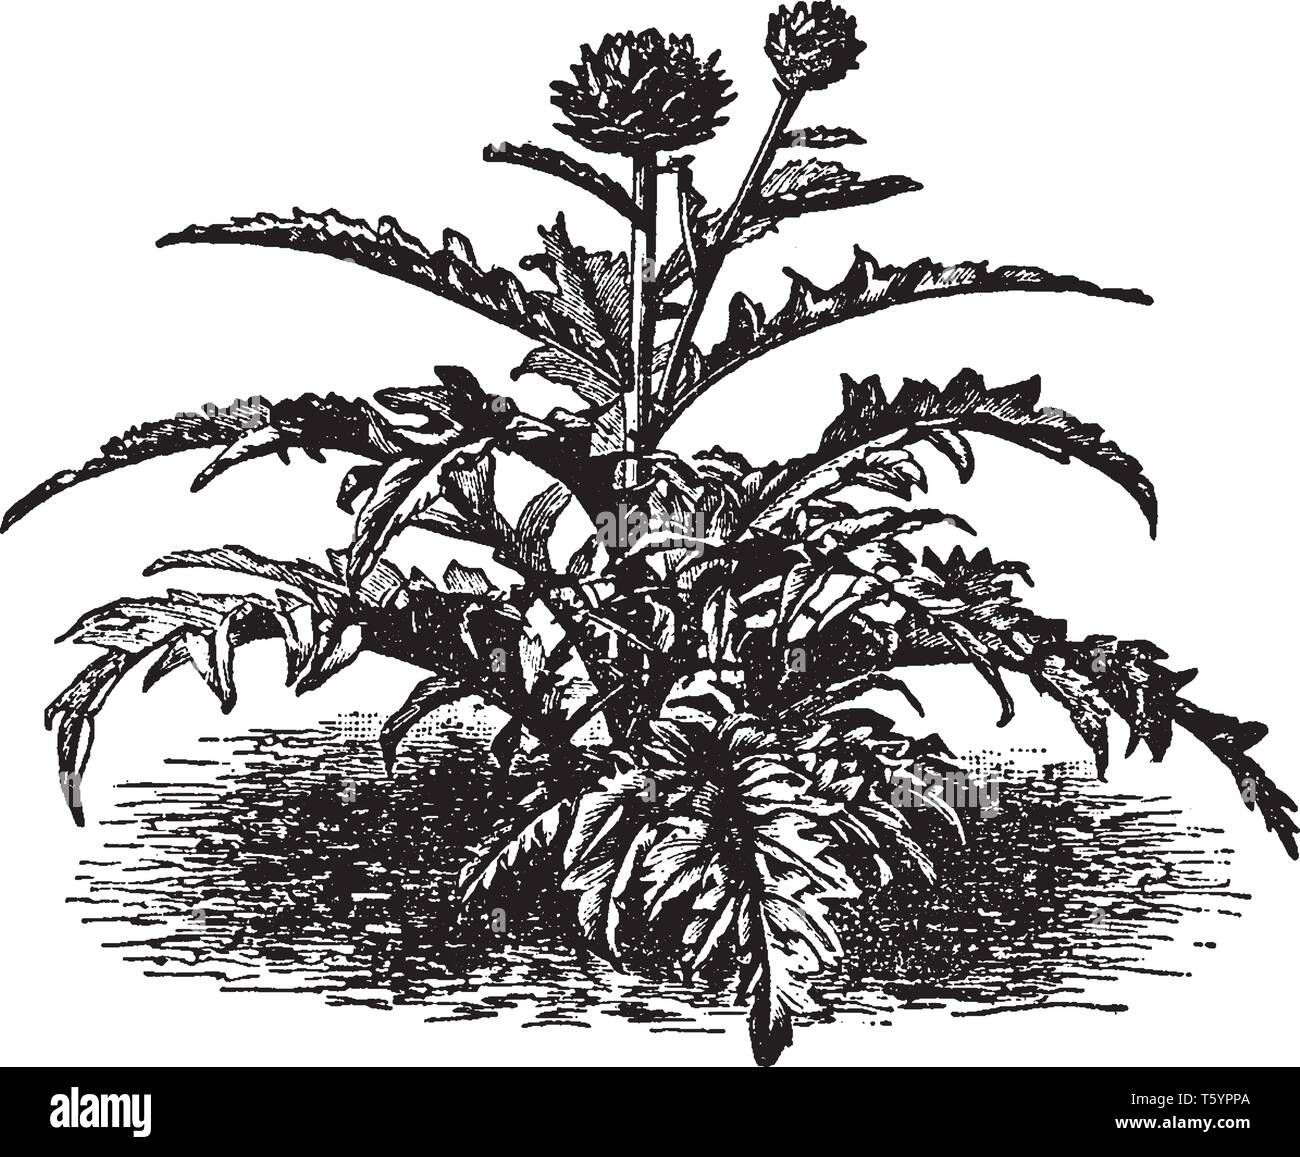 Il s'agit d'une image d'Artichaut plante. Ce légume se développe jusqu'à 1,4 m de hauteur, avec l'arche, profondément lobées, argentés, glucose-feuilles vertes 50-82 cm de long, vi Illustration de Vecteur